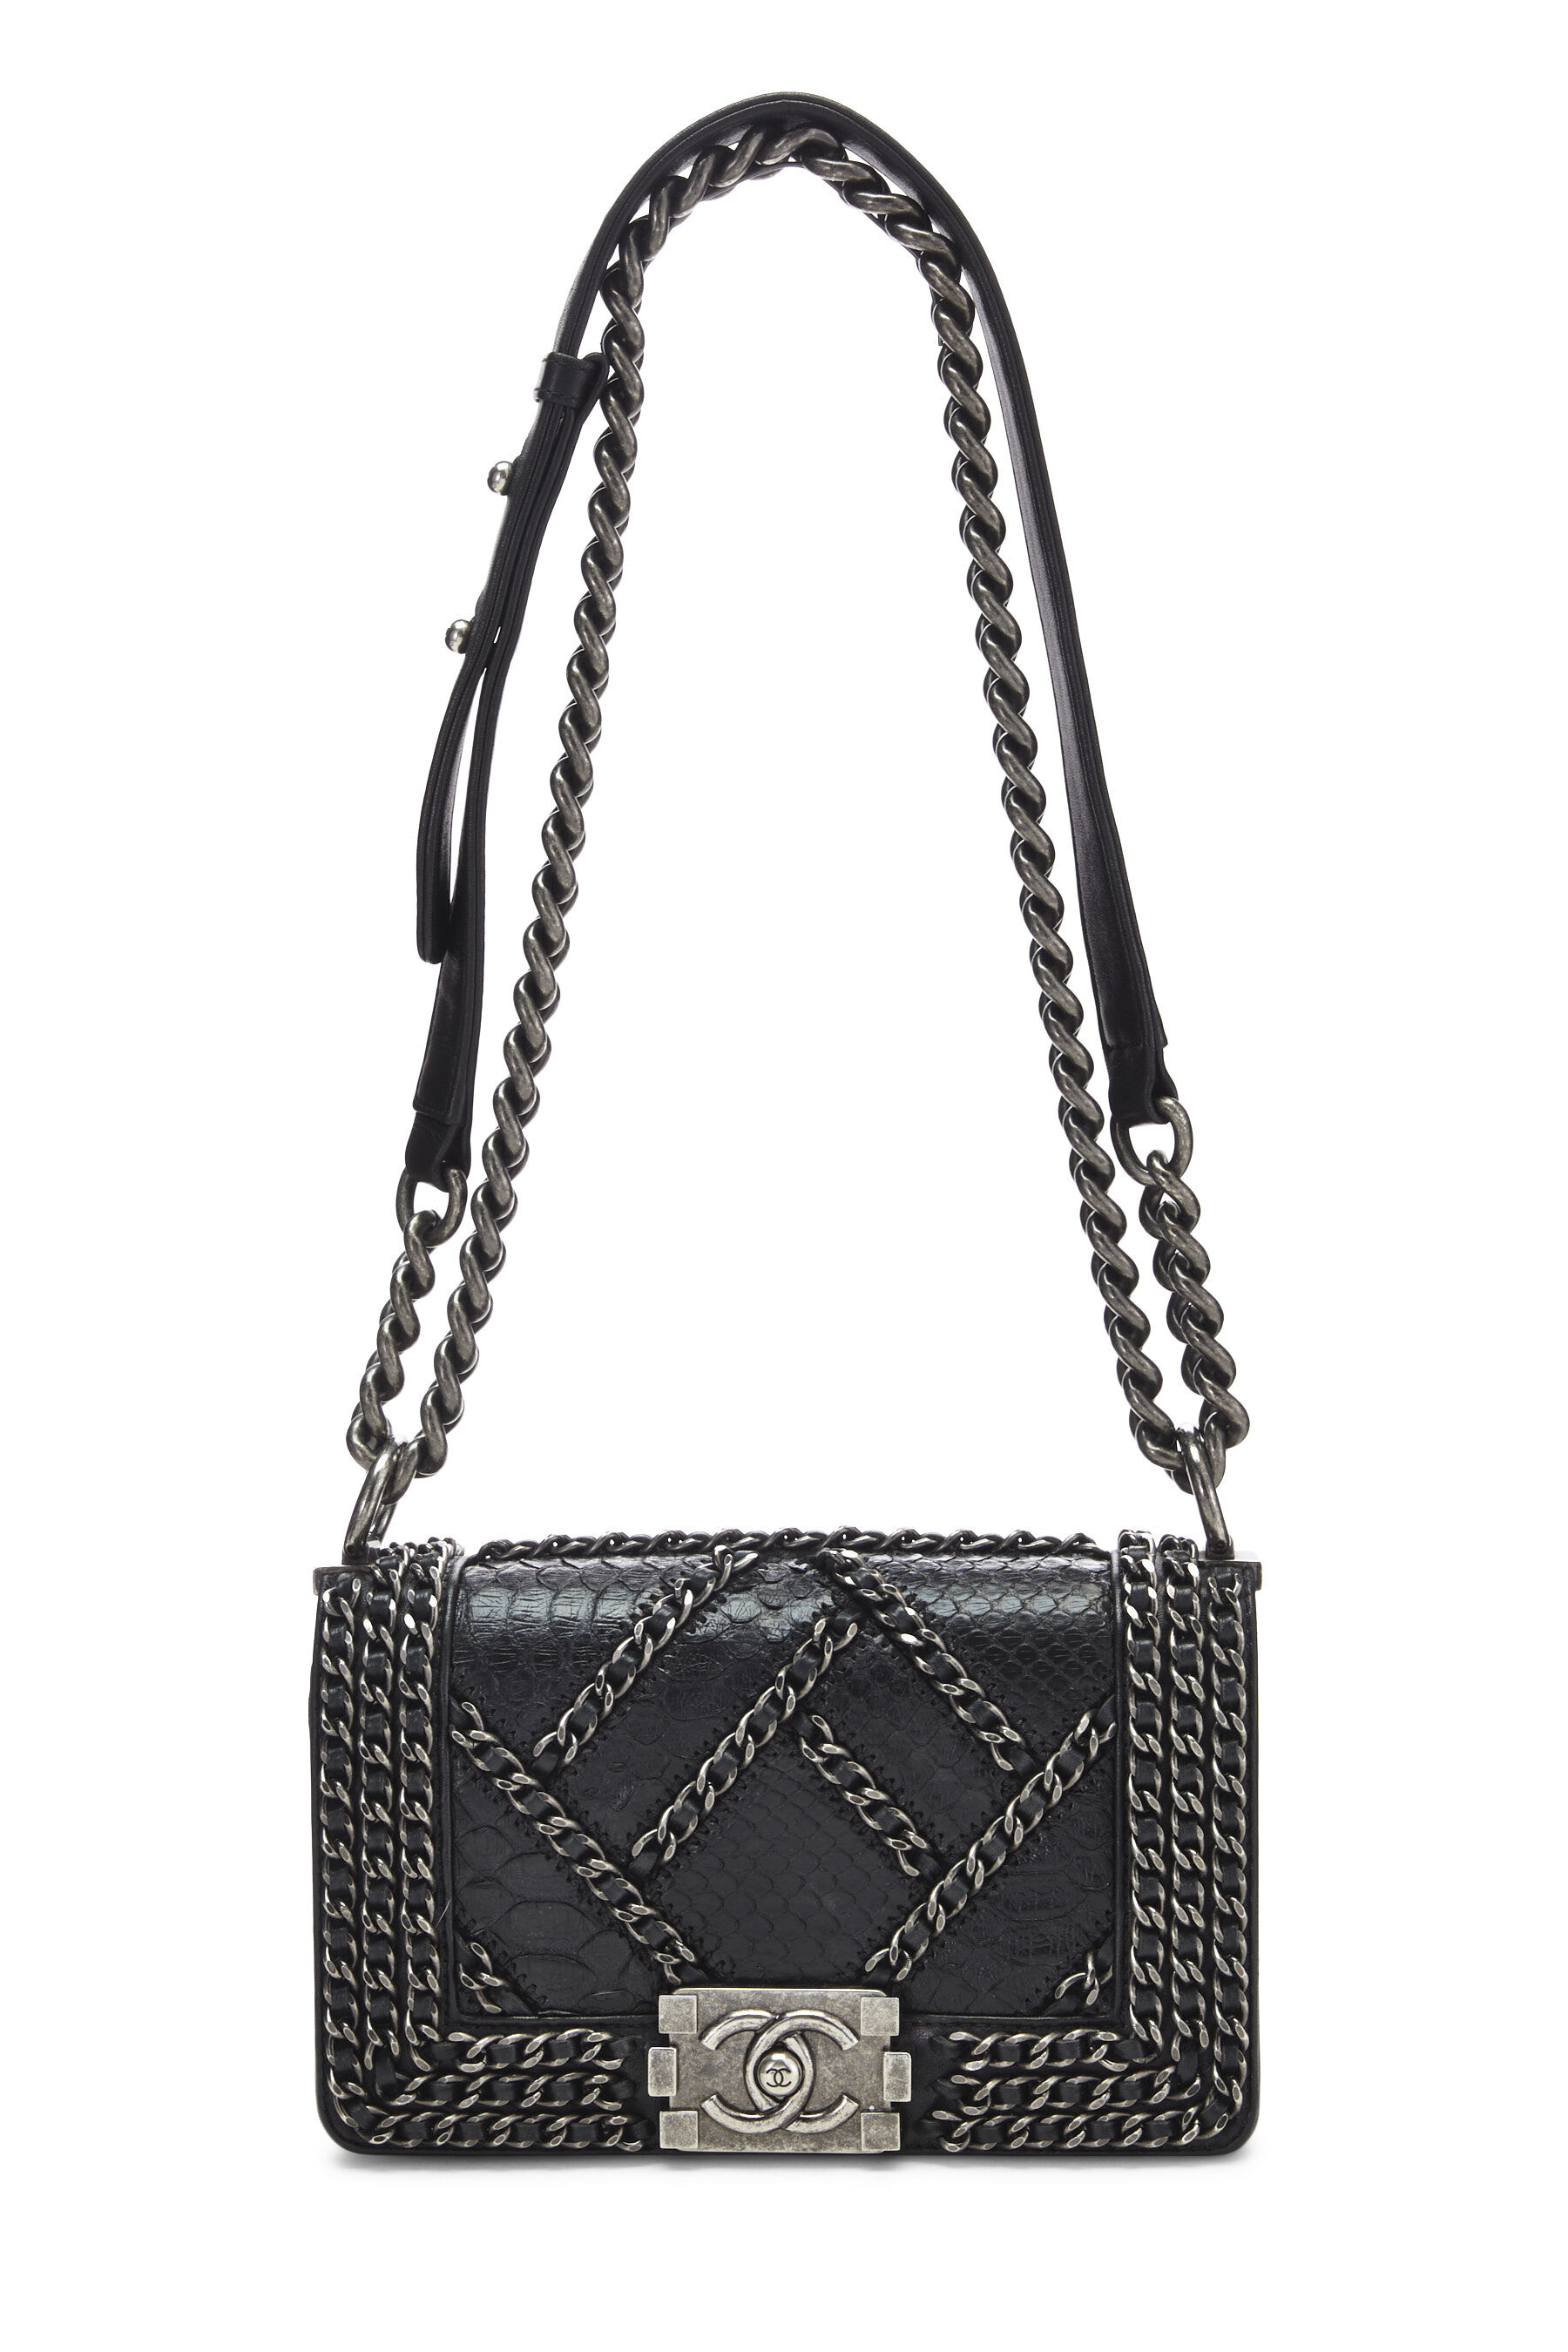 Chanel Black Python Chain Boy Bag Small Q6B2XS2FKH000 | WGACA